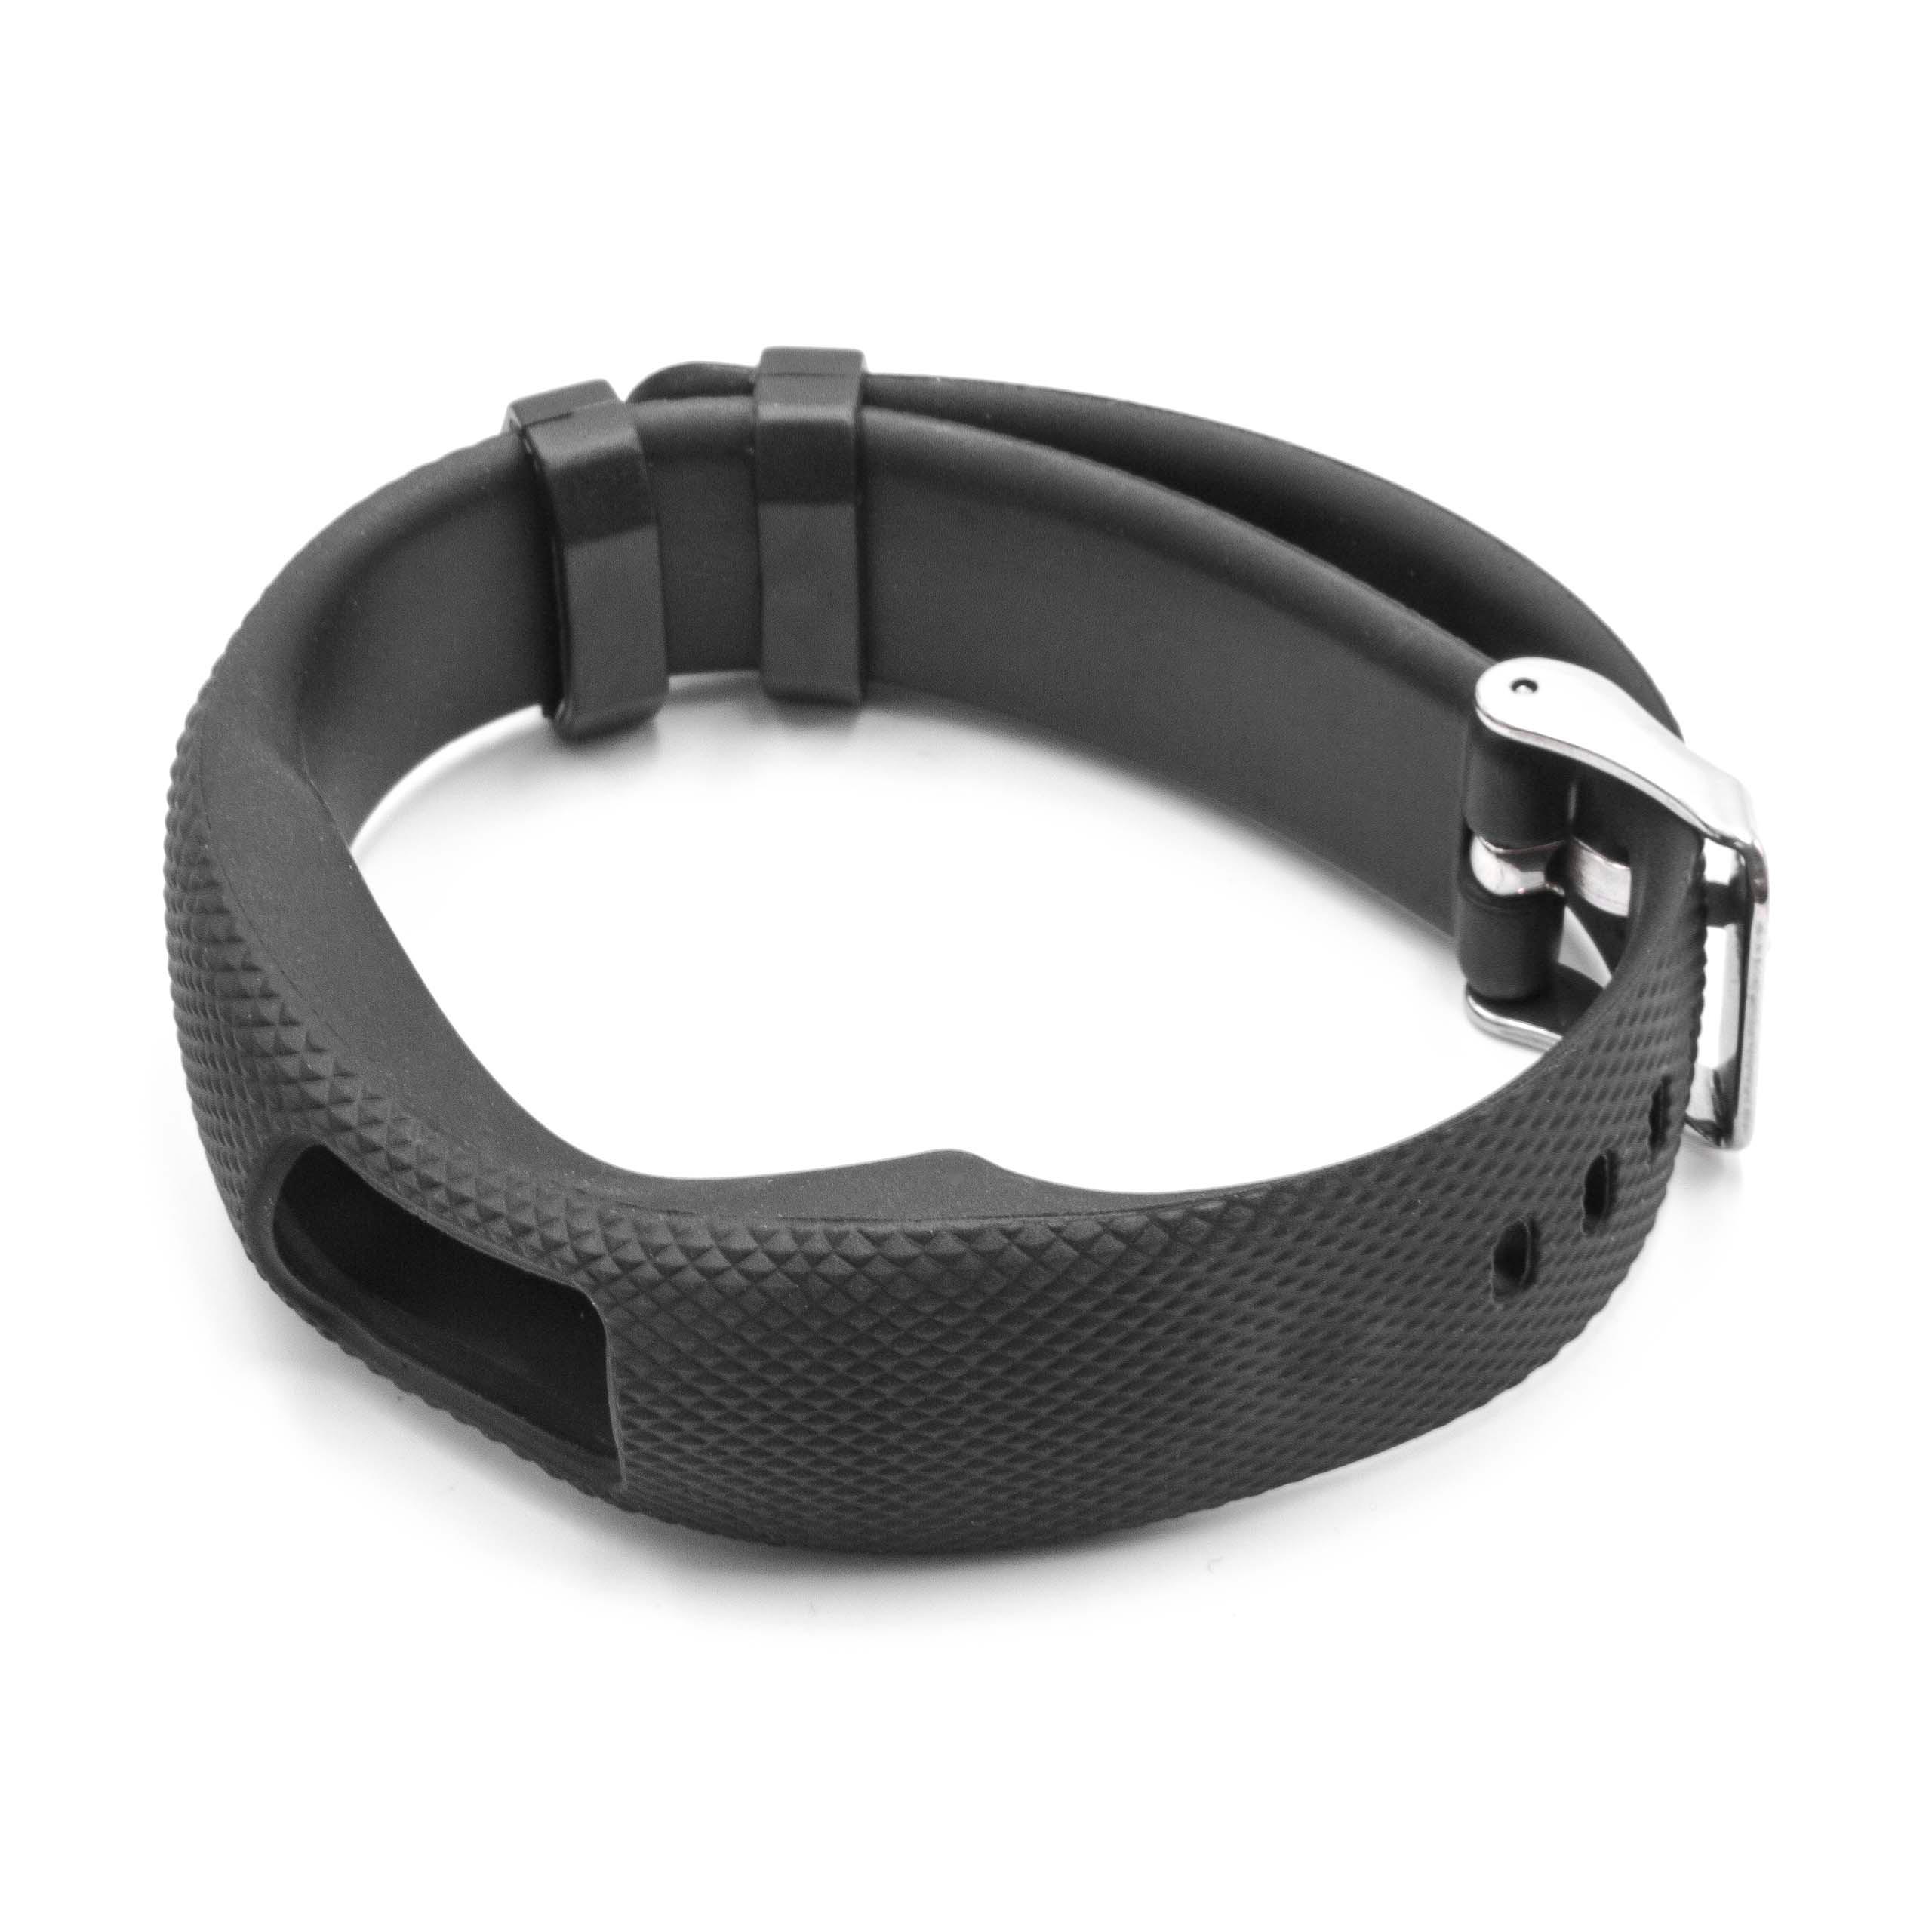 correa para Garmin Vivofit smartwatch - largo 24,5 cm, ancho 19,5 mm, negro